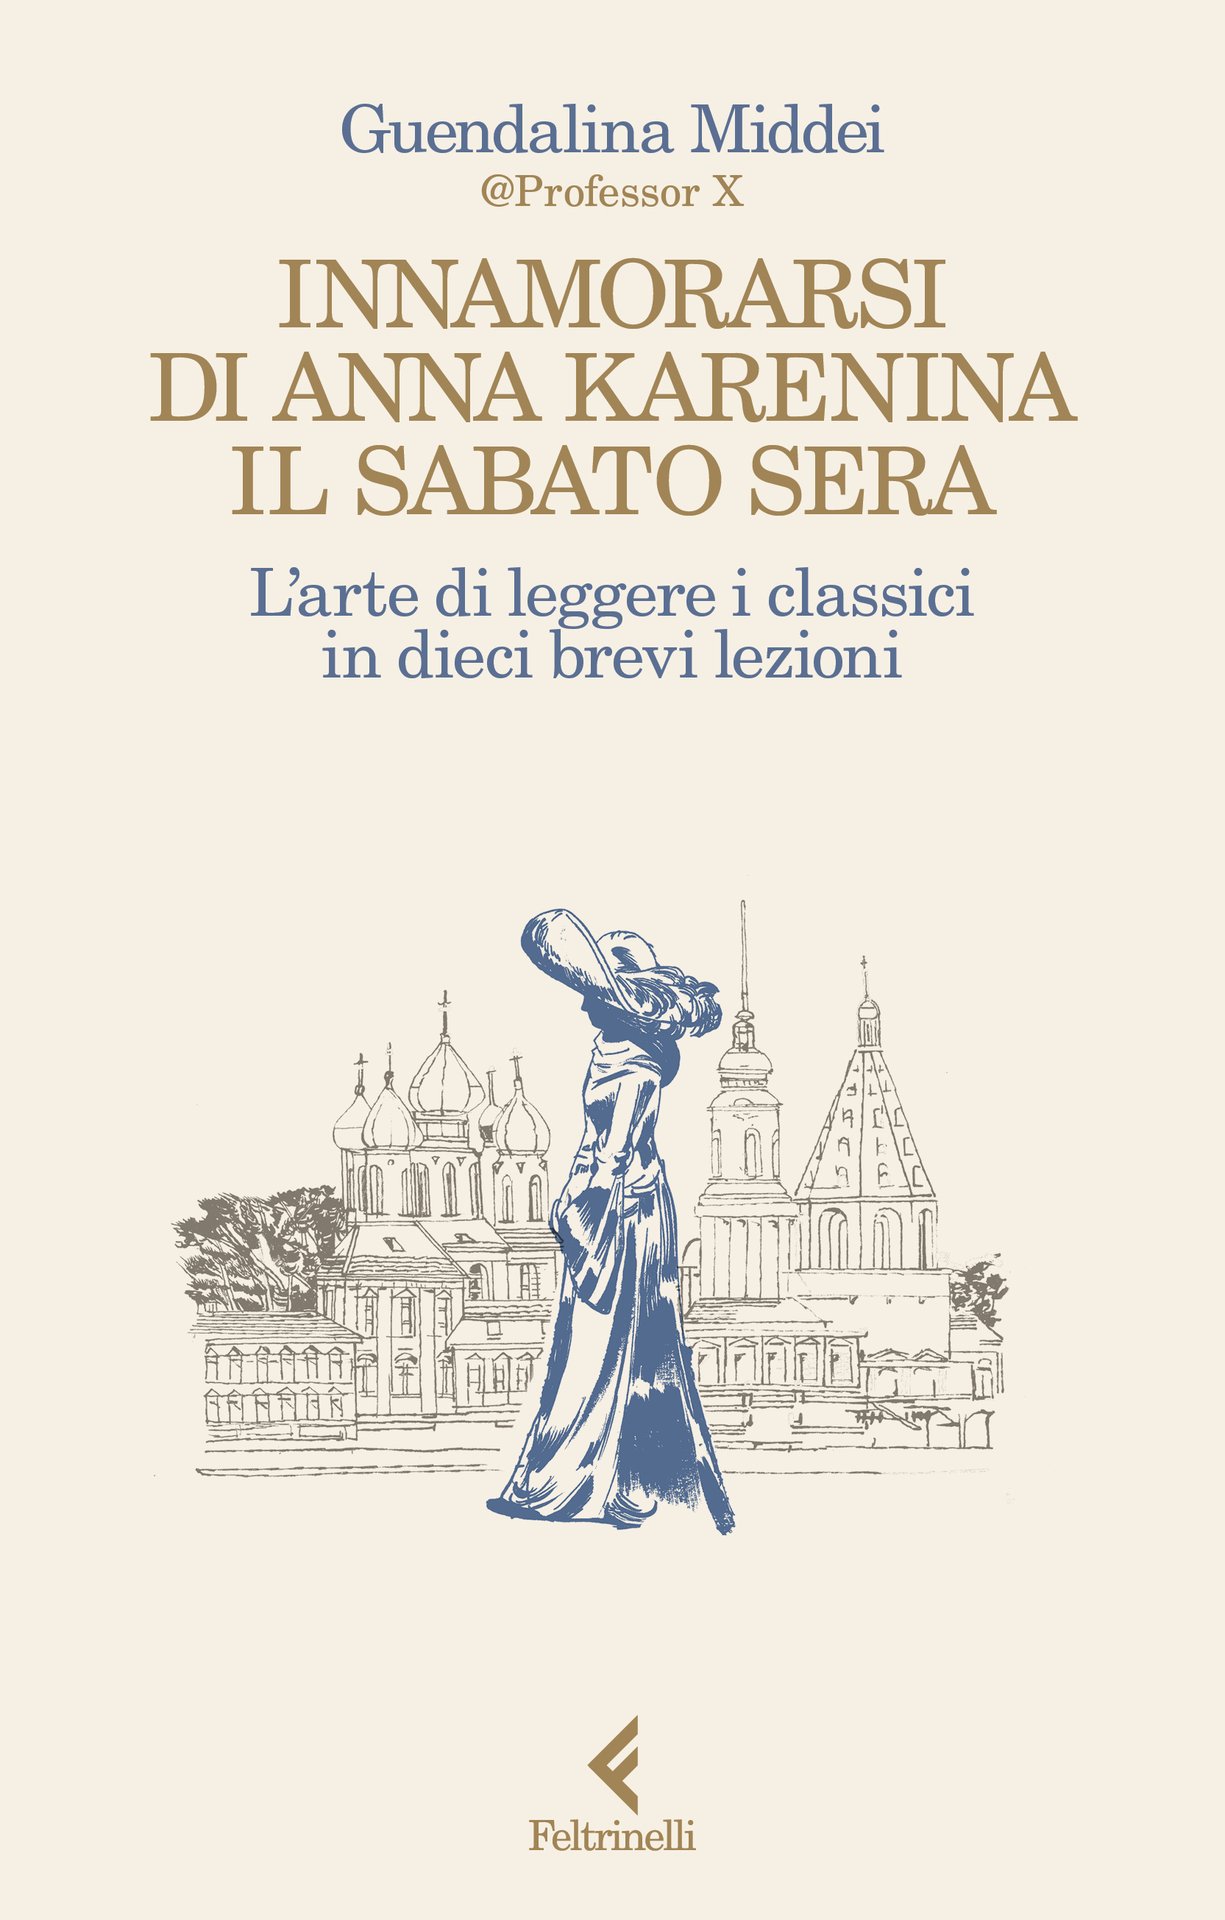 Guendalina Middei presenta "Innamorarsi di Anna Karenina il sabato sera" a Milano, Libreria Feltrinelli, Viale Sabotino